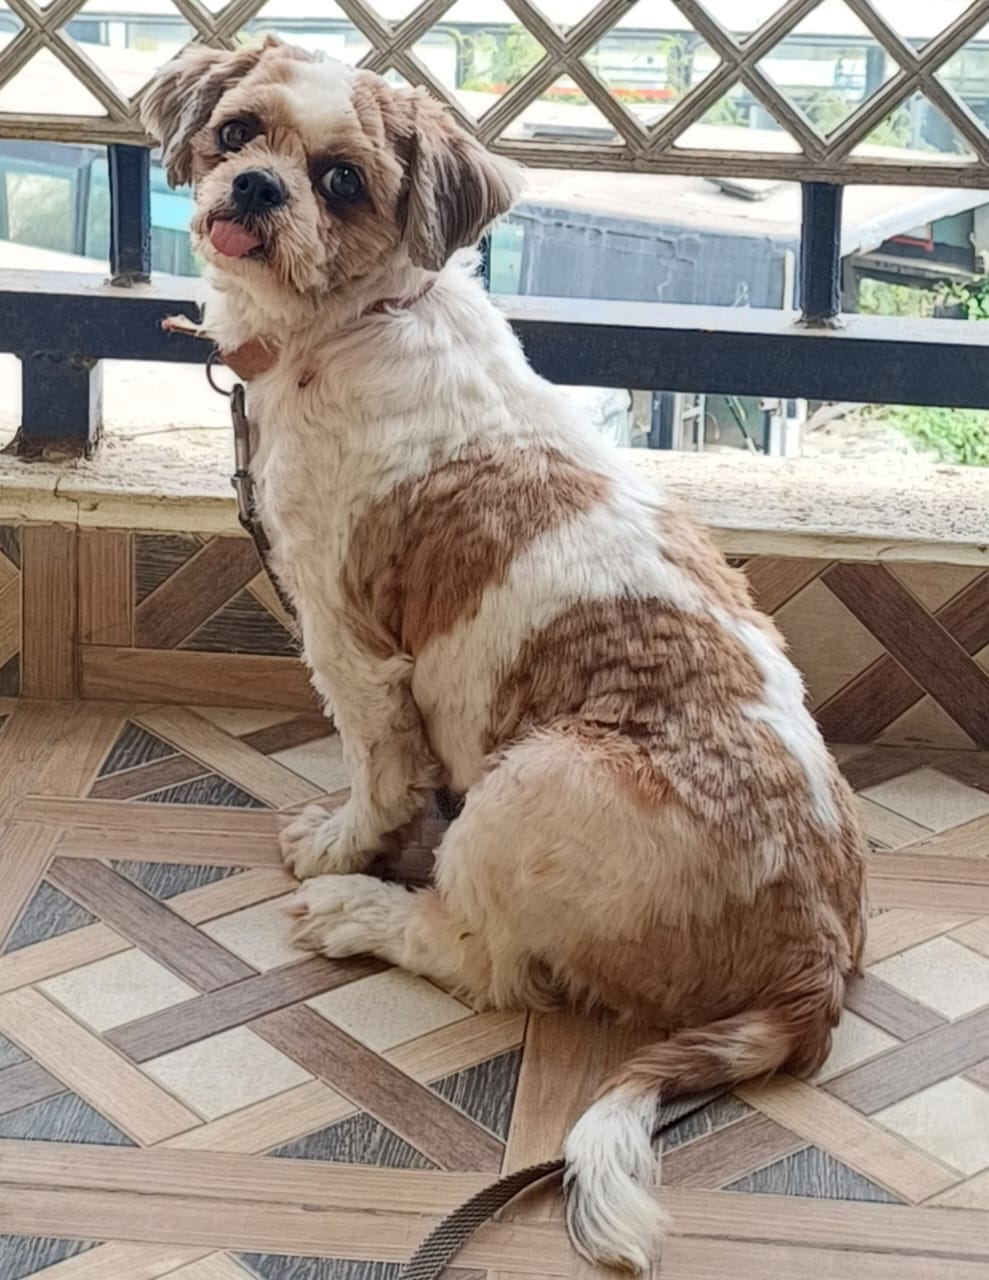 Shiny, a female Shih Tzu dog missing in Bangalore